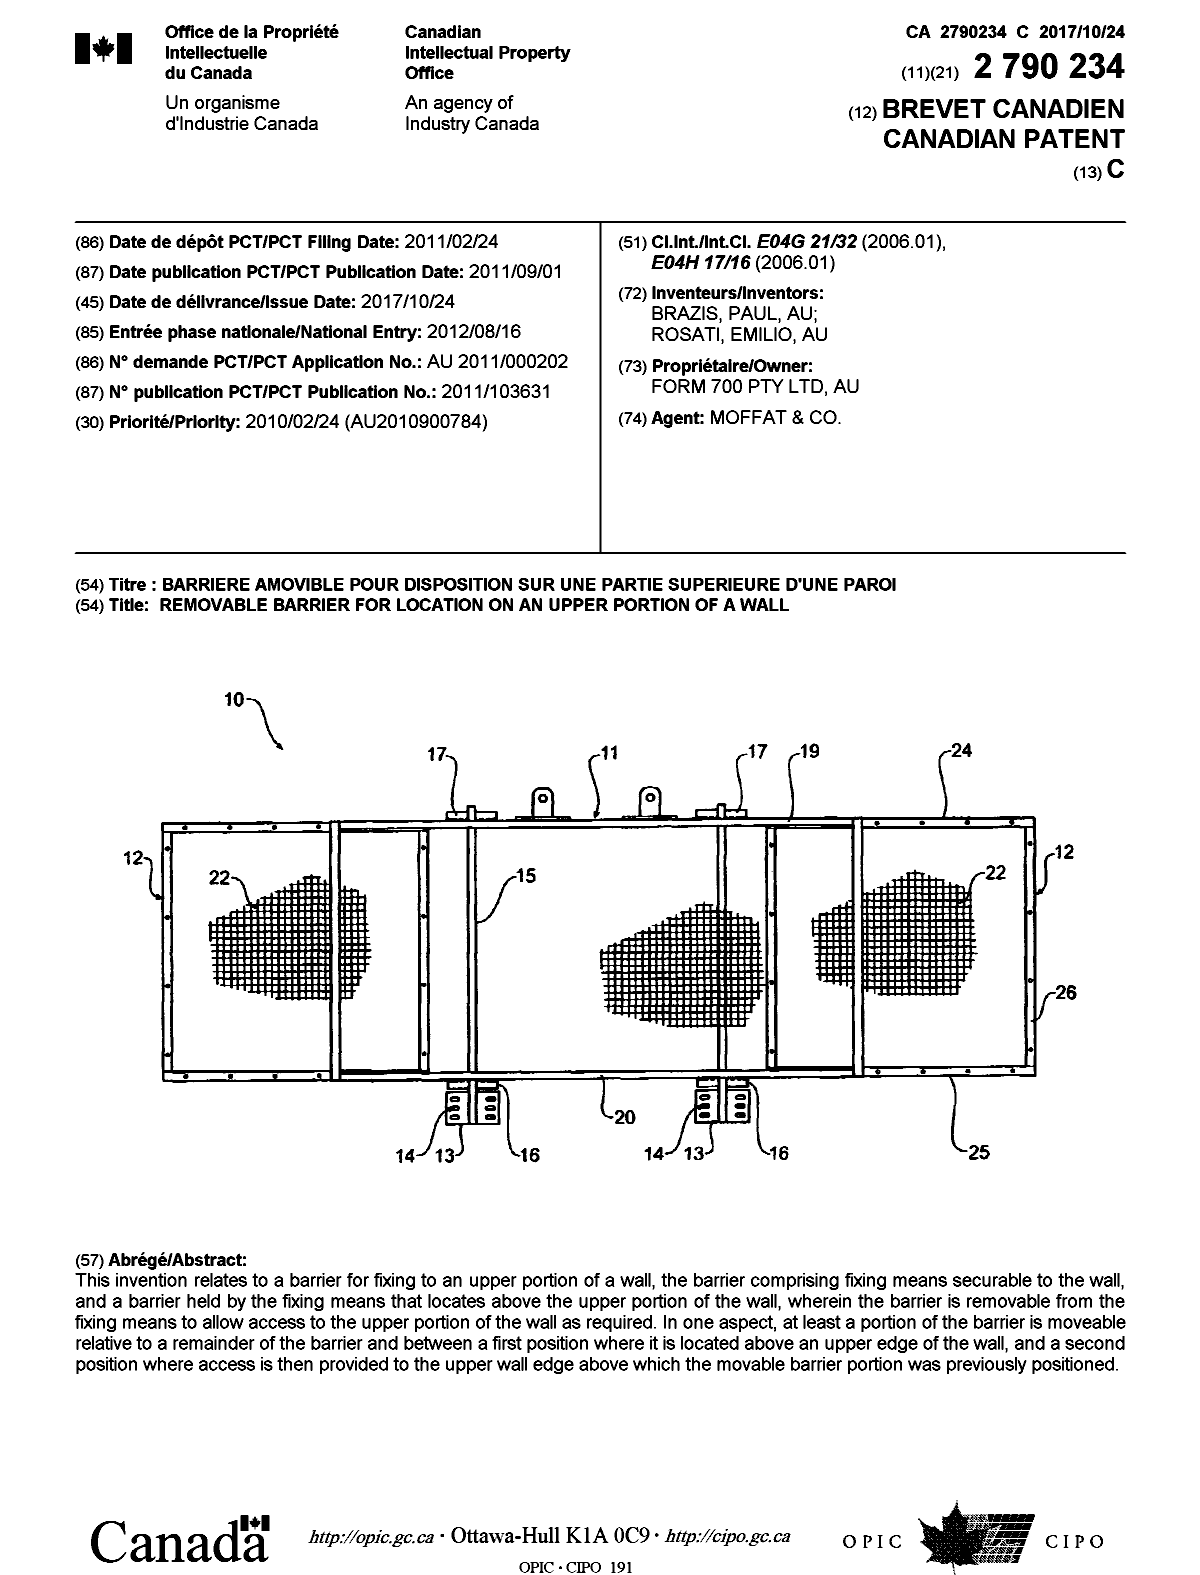 Document de brevet canadien 2790234. Page couverture 20170925. Image 1 de 1